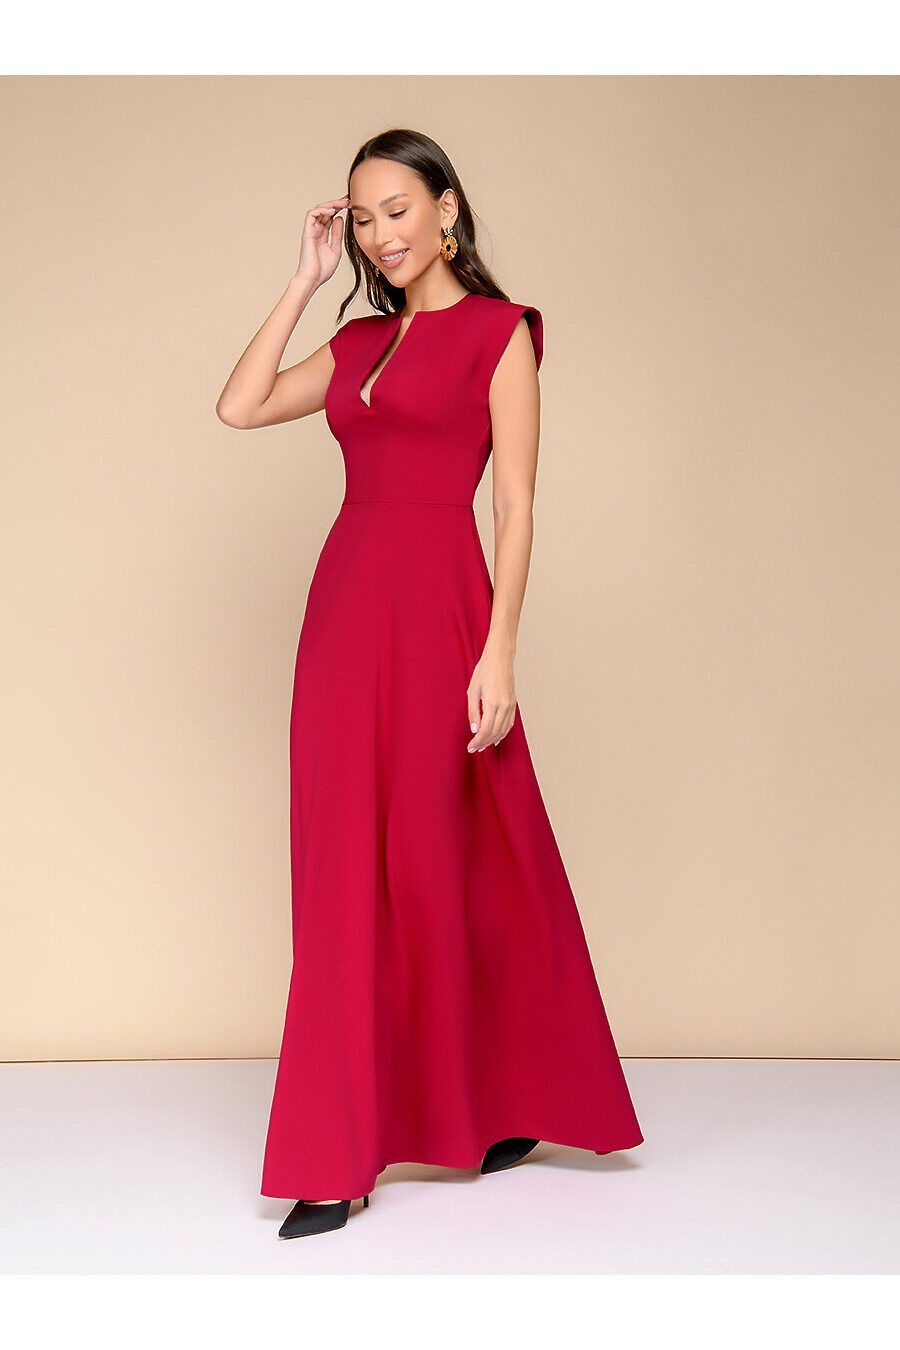 Платье для женщин 1001 DRESS 775880 купить оптом от производителя. Совместная покупка женской одежды в OptMoyo